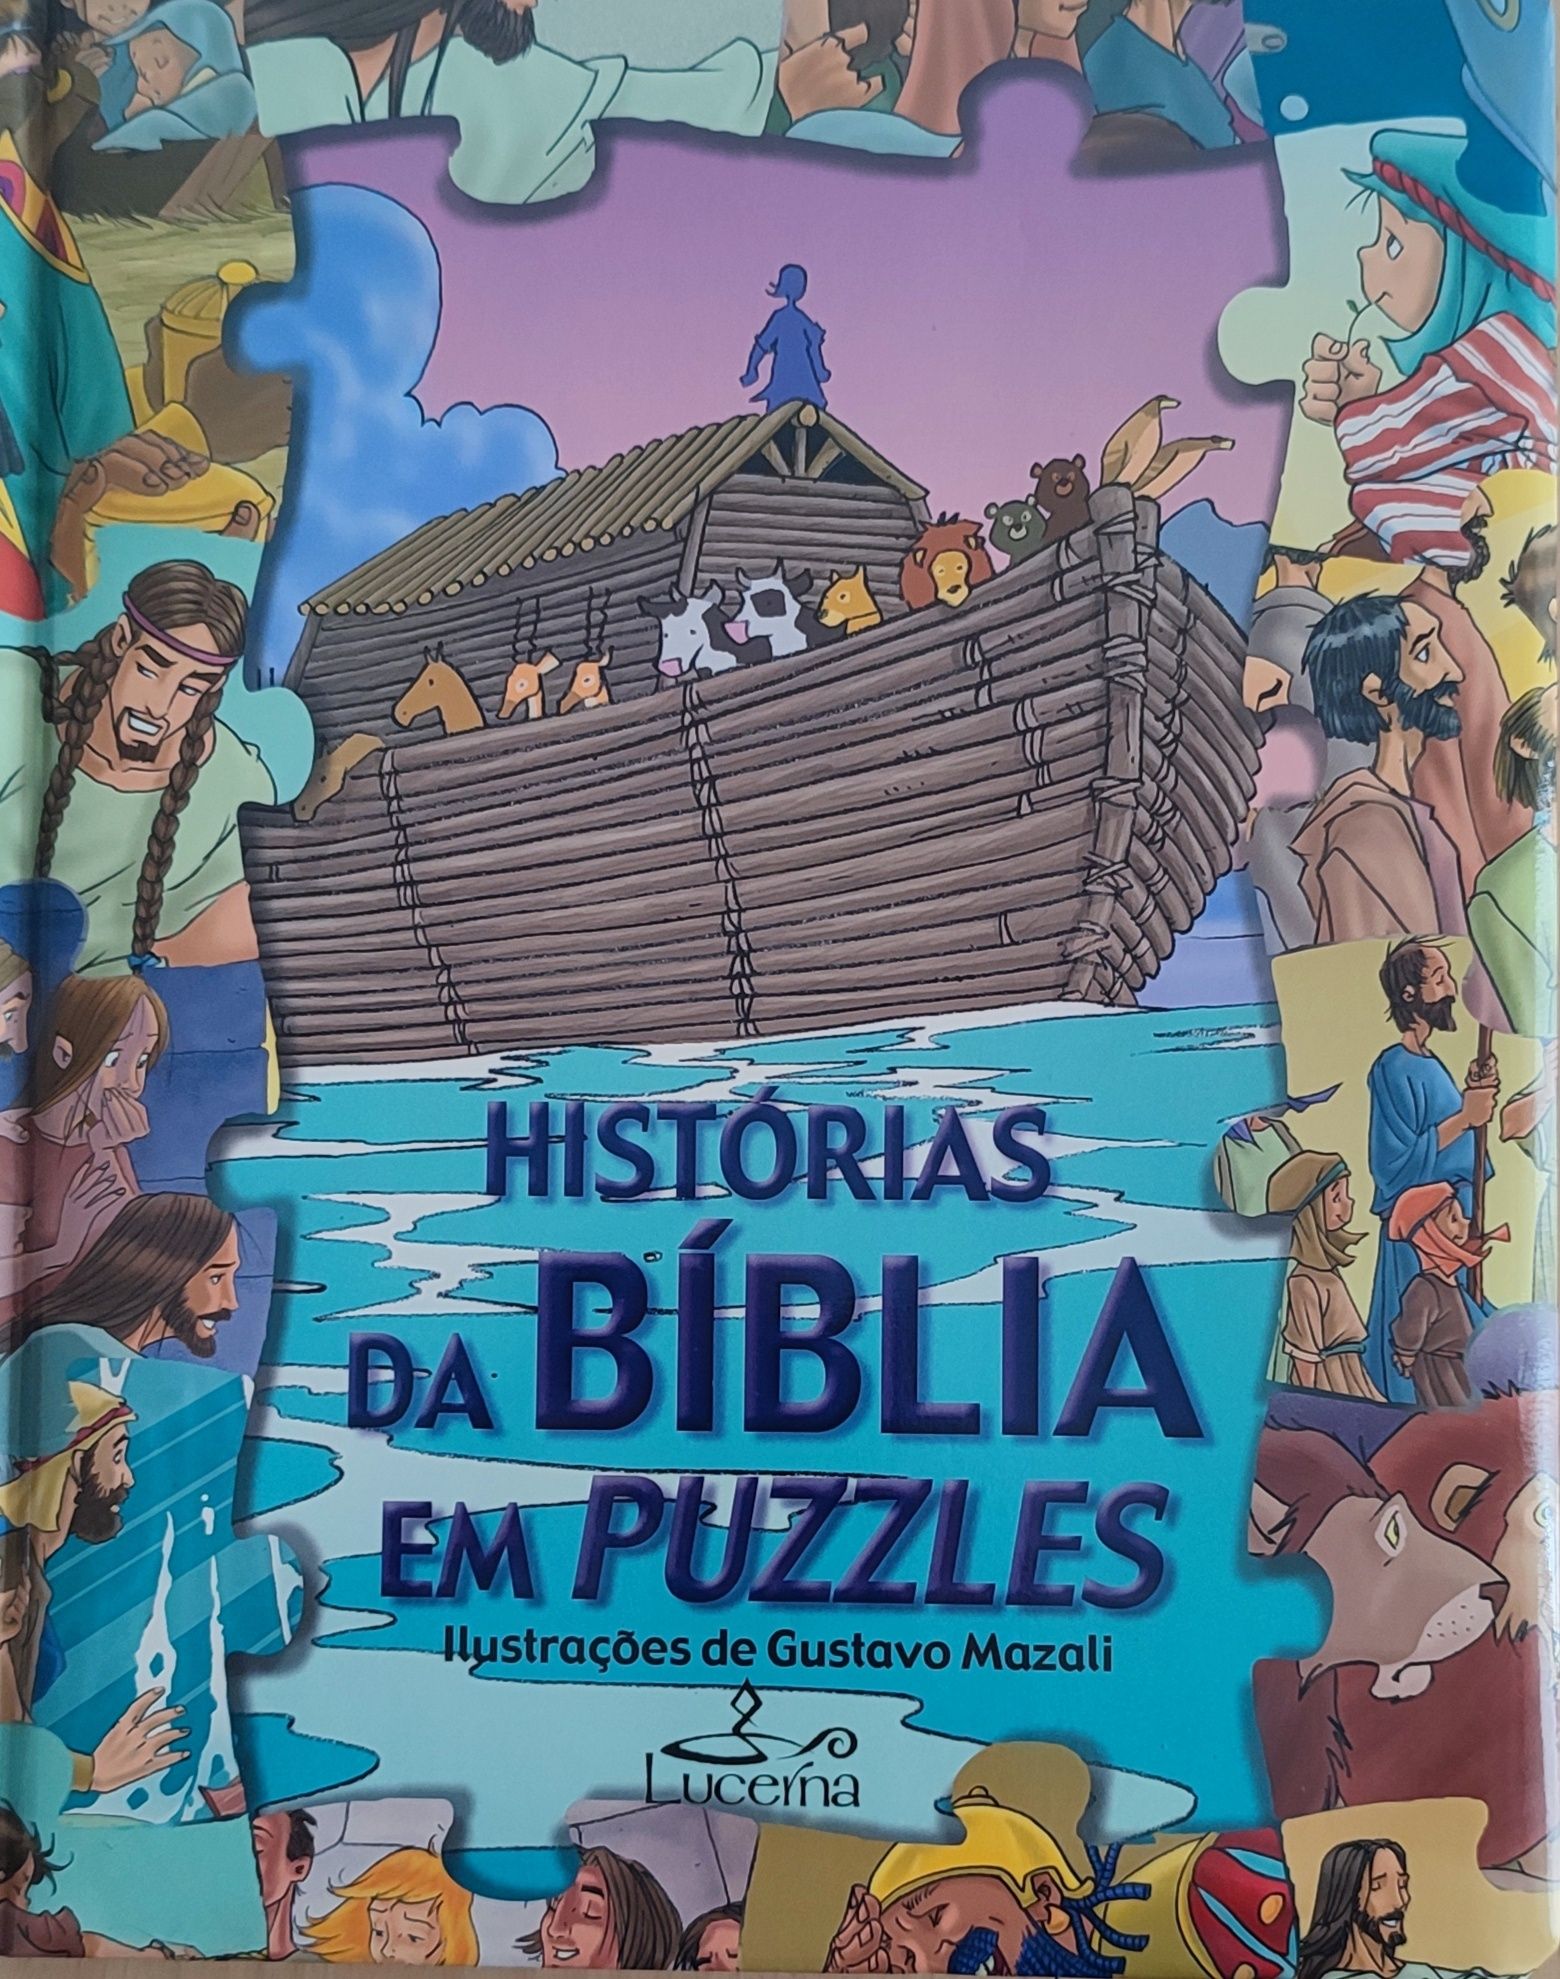 Livro "História da bíblia em puzzles"